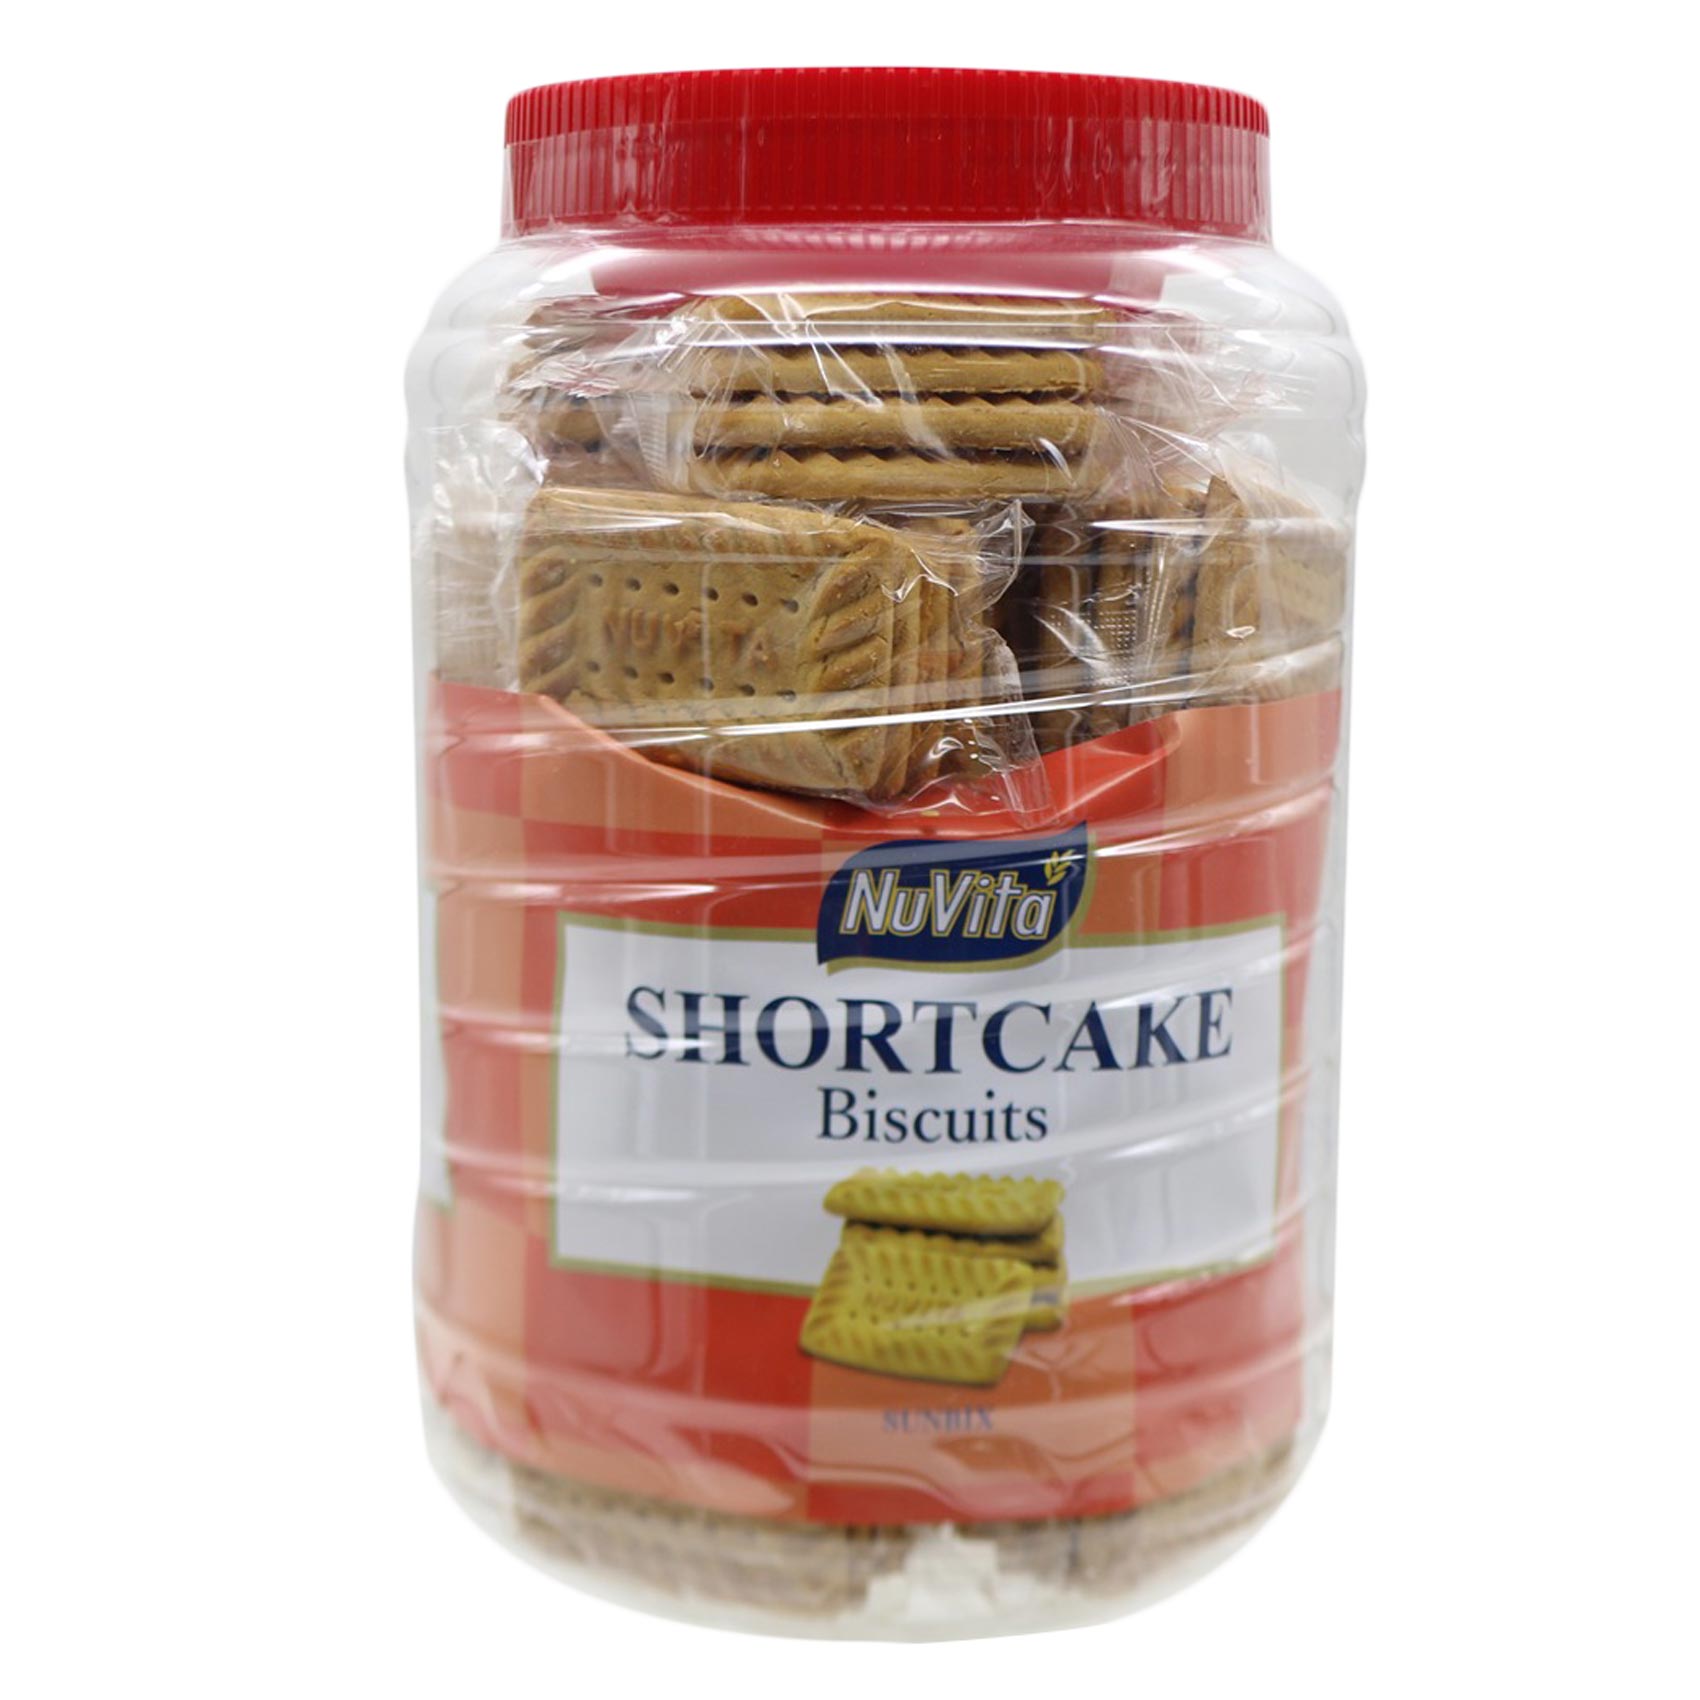 NuVita Shortcake Biscuits Jar 900g